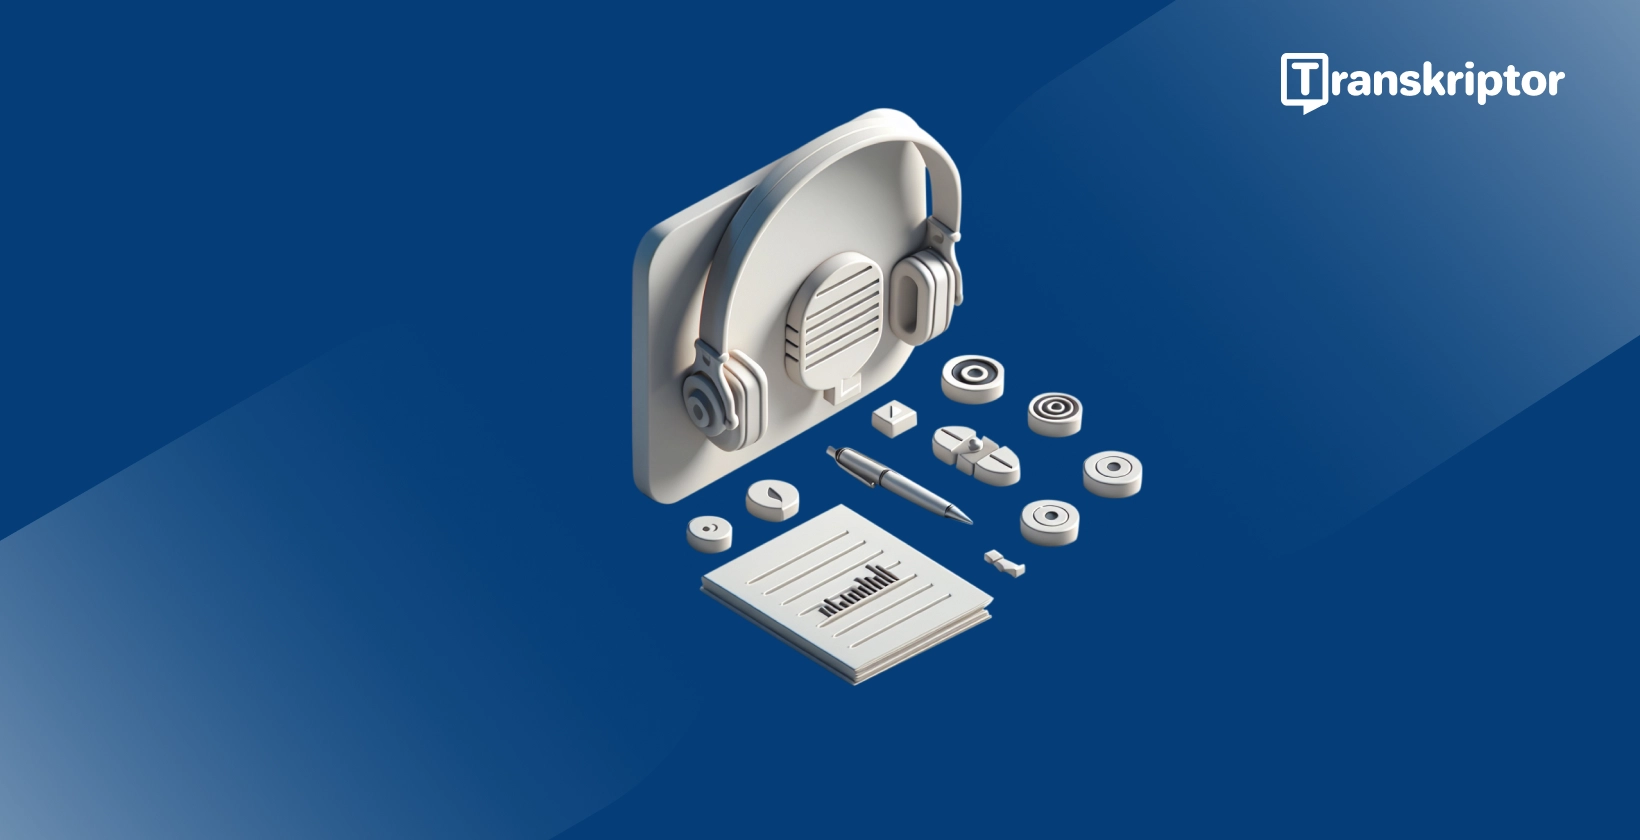 3D 耳机和麦克风设置，带有指示verbatim转录过程和应用的注释。